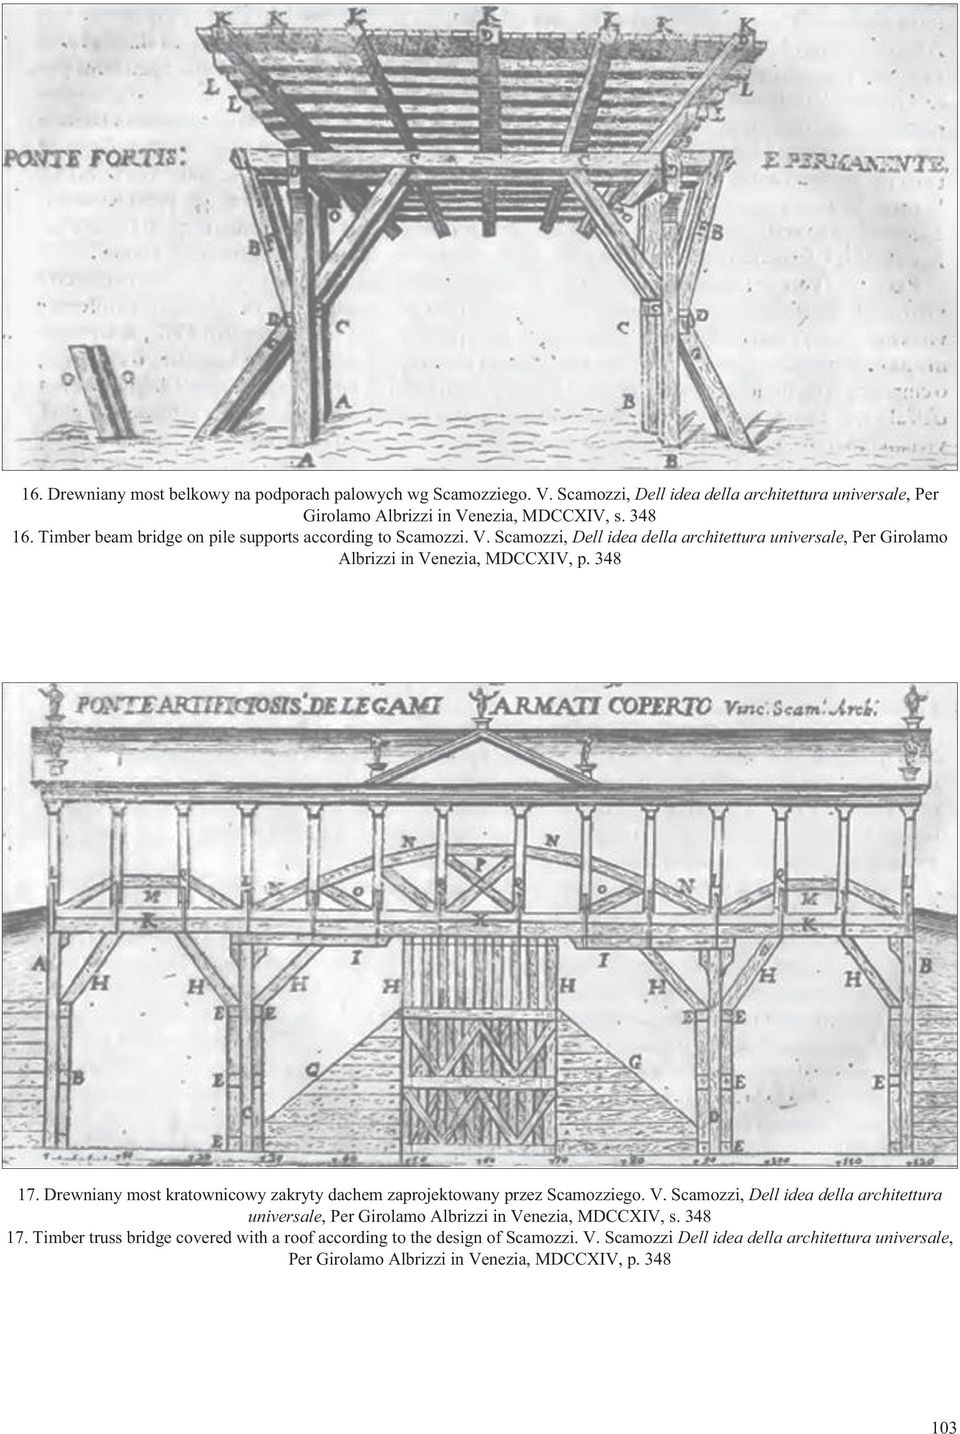 Drewniany most kratownicowy zakryty dachem zaprojektowany przez Scamozziego. V. Scamozzi, Dell idea della architettura universale, Per Girolamo Albrizzi in Venezia, MDCCXIV, s.